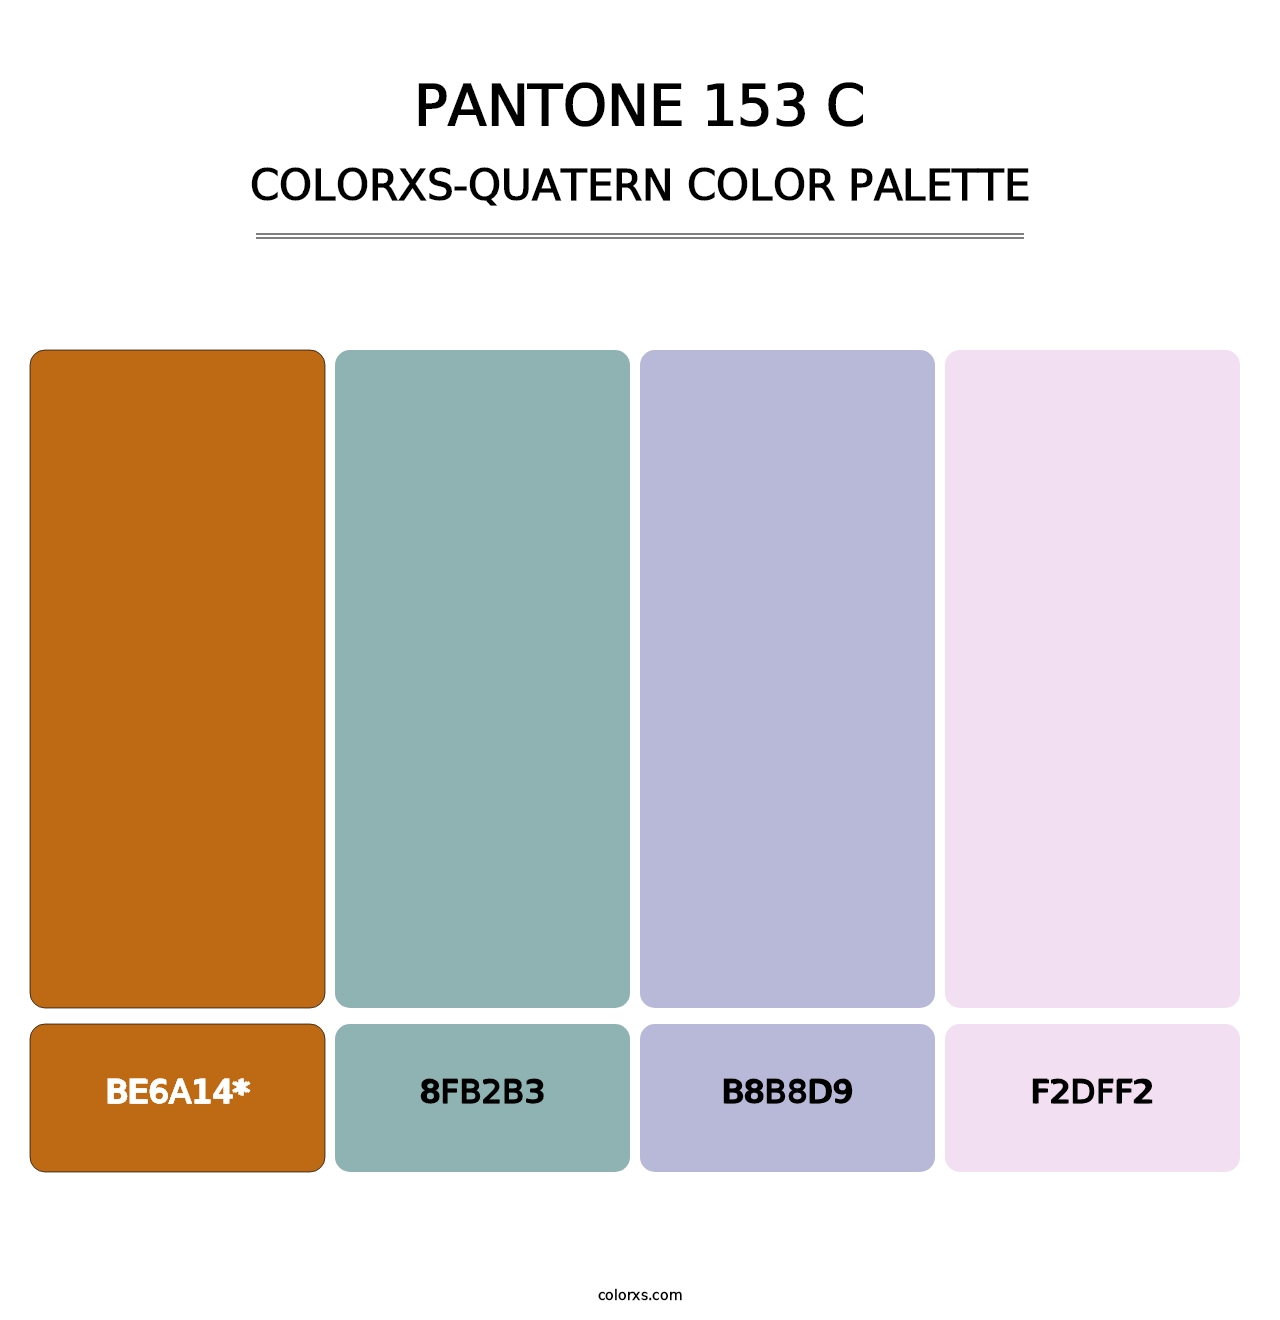 PANTONE 153 C - Colorxs Quatern Palette